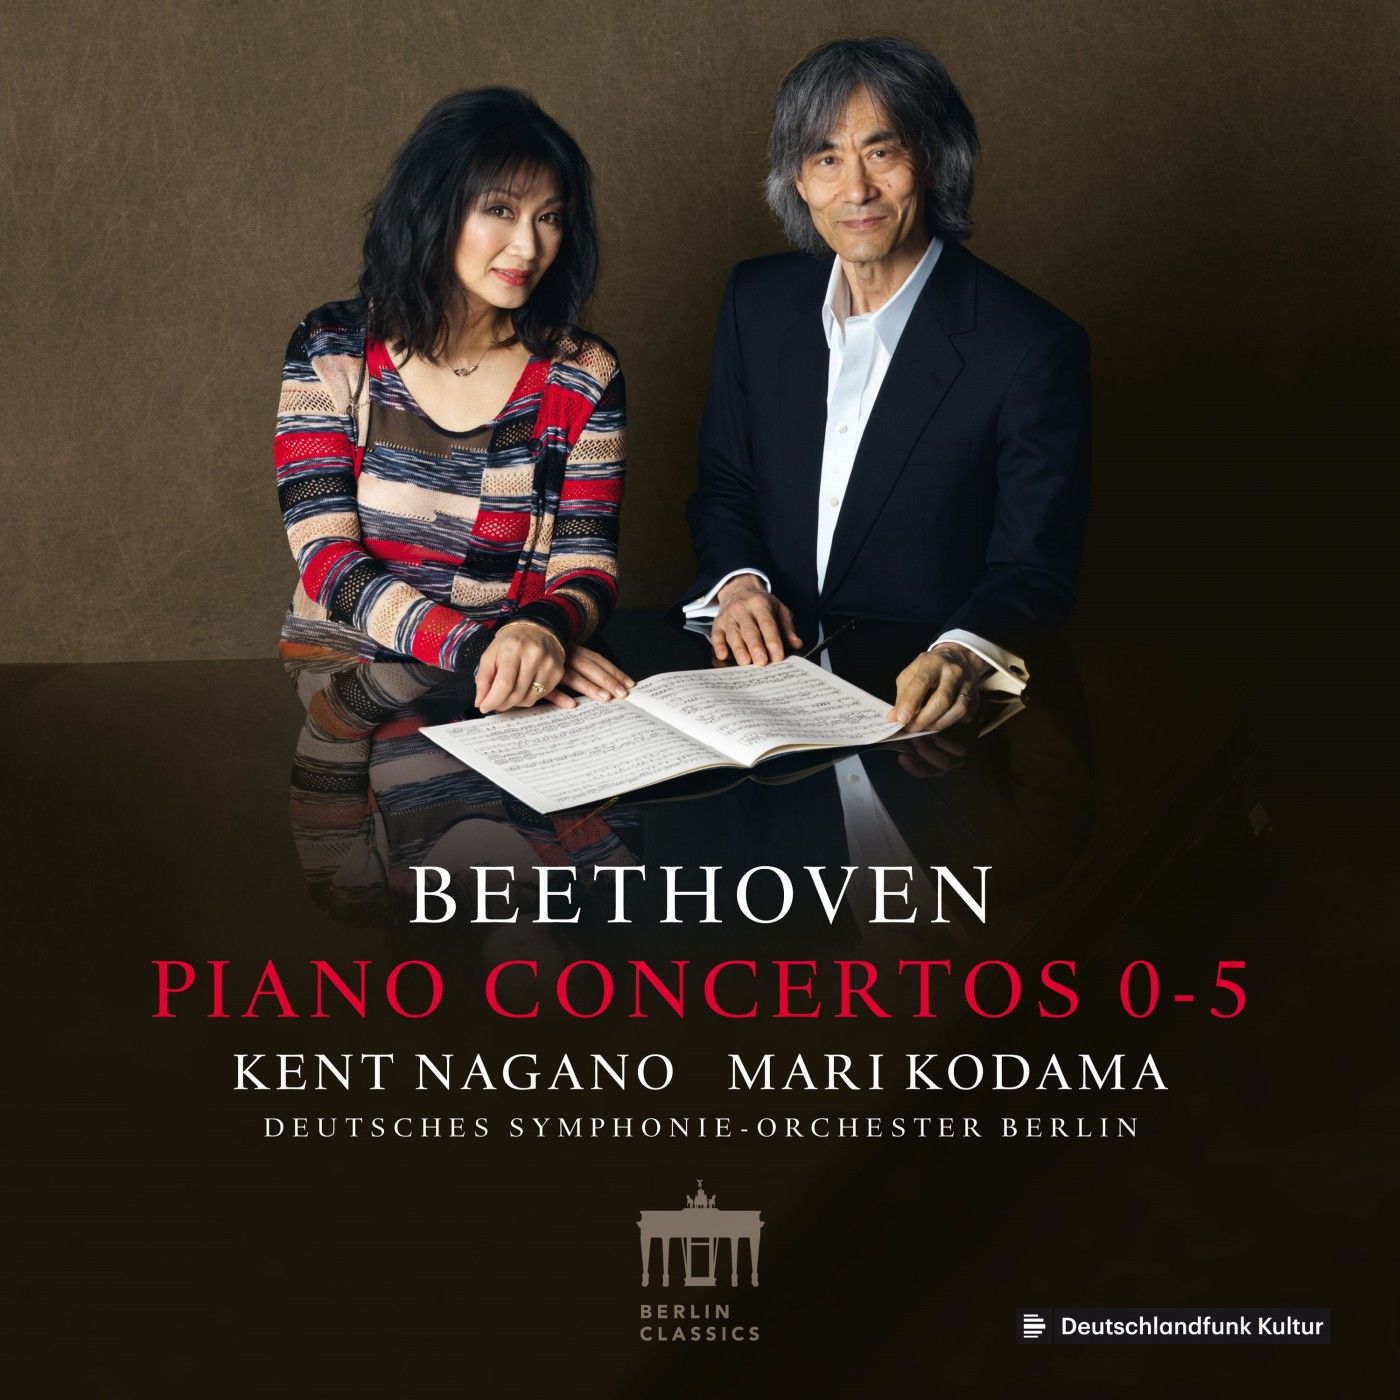 Mari Kodama, Deutsches Symphonie-Orchester Berlin & Kent Nagano - Beethoven: Piano Concertos 0-5 (2019) [FLAC 24bit/88,2kHz]